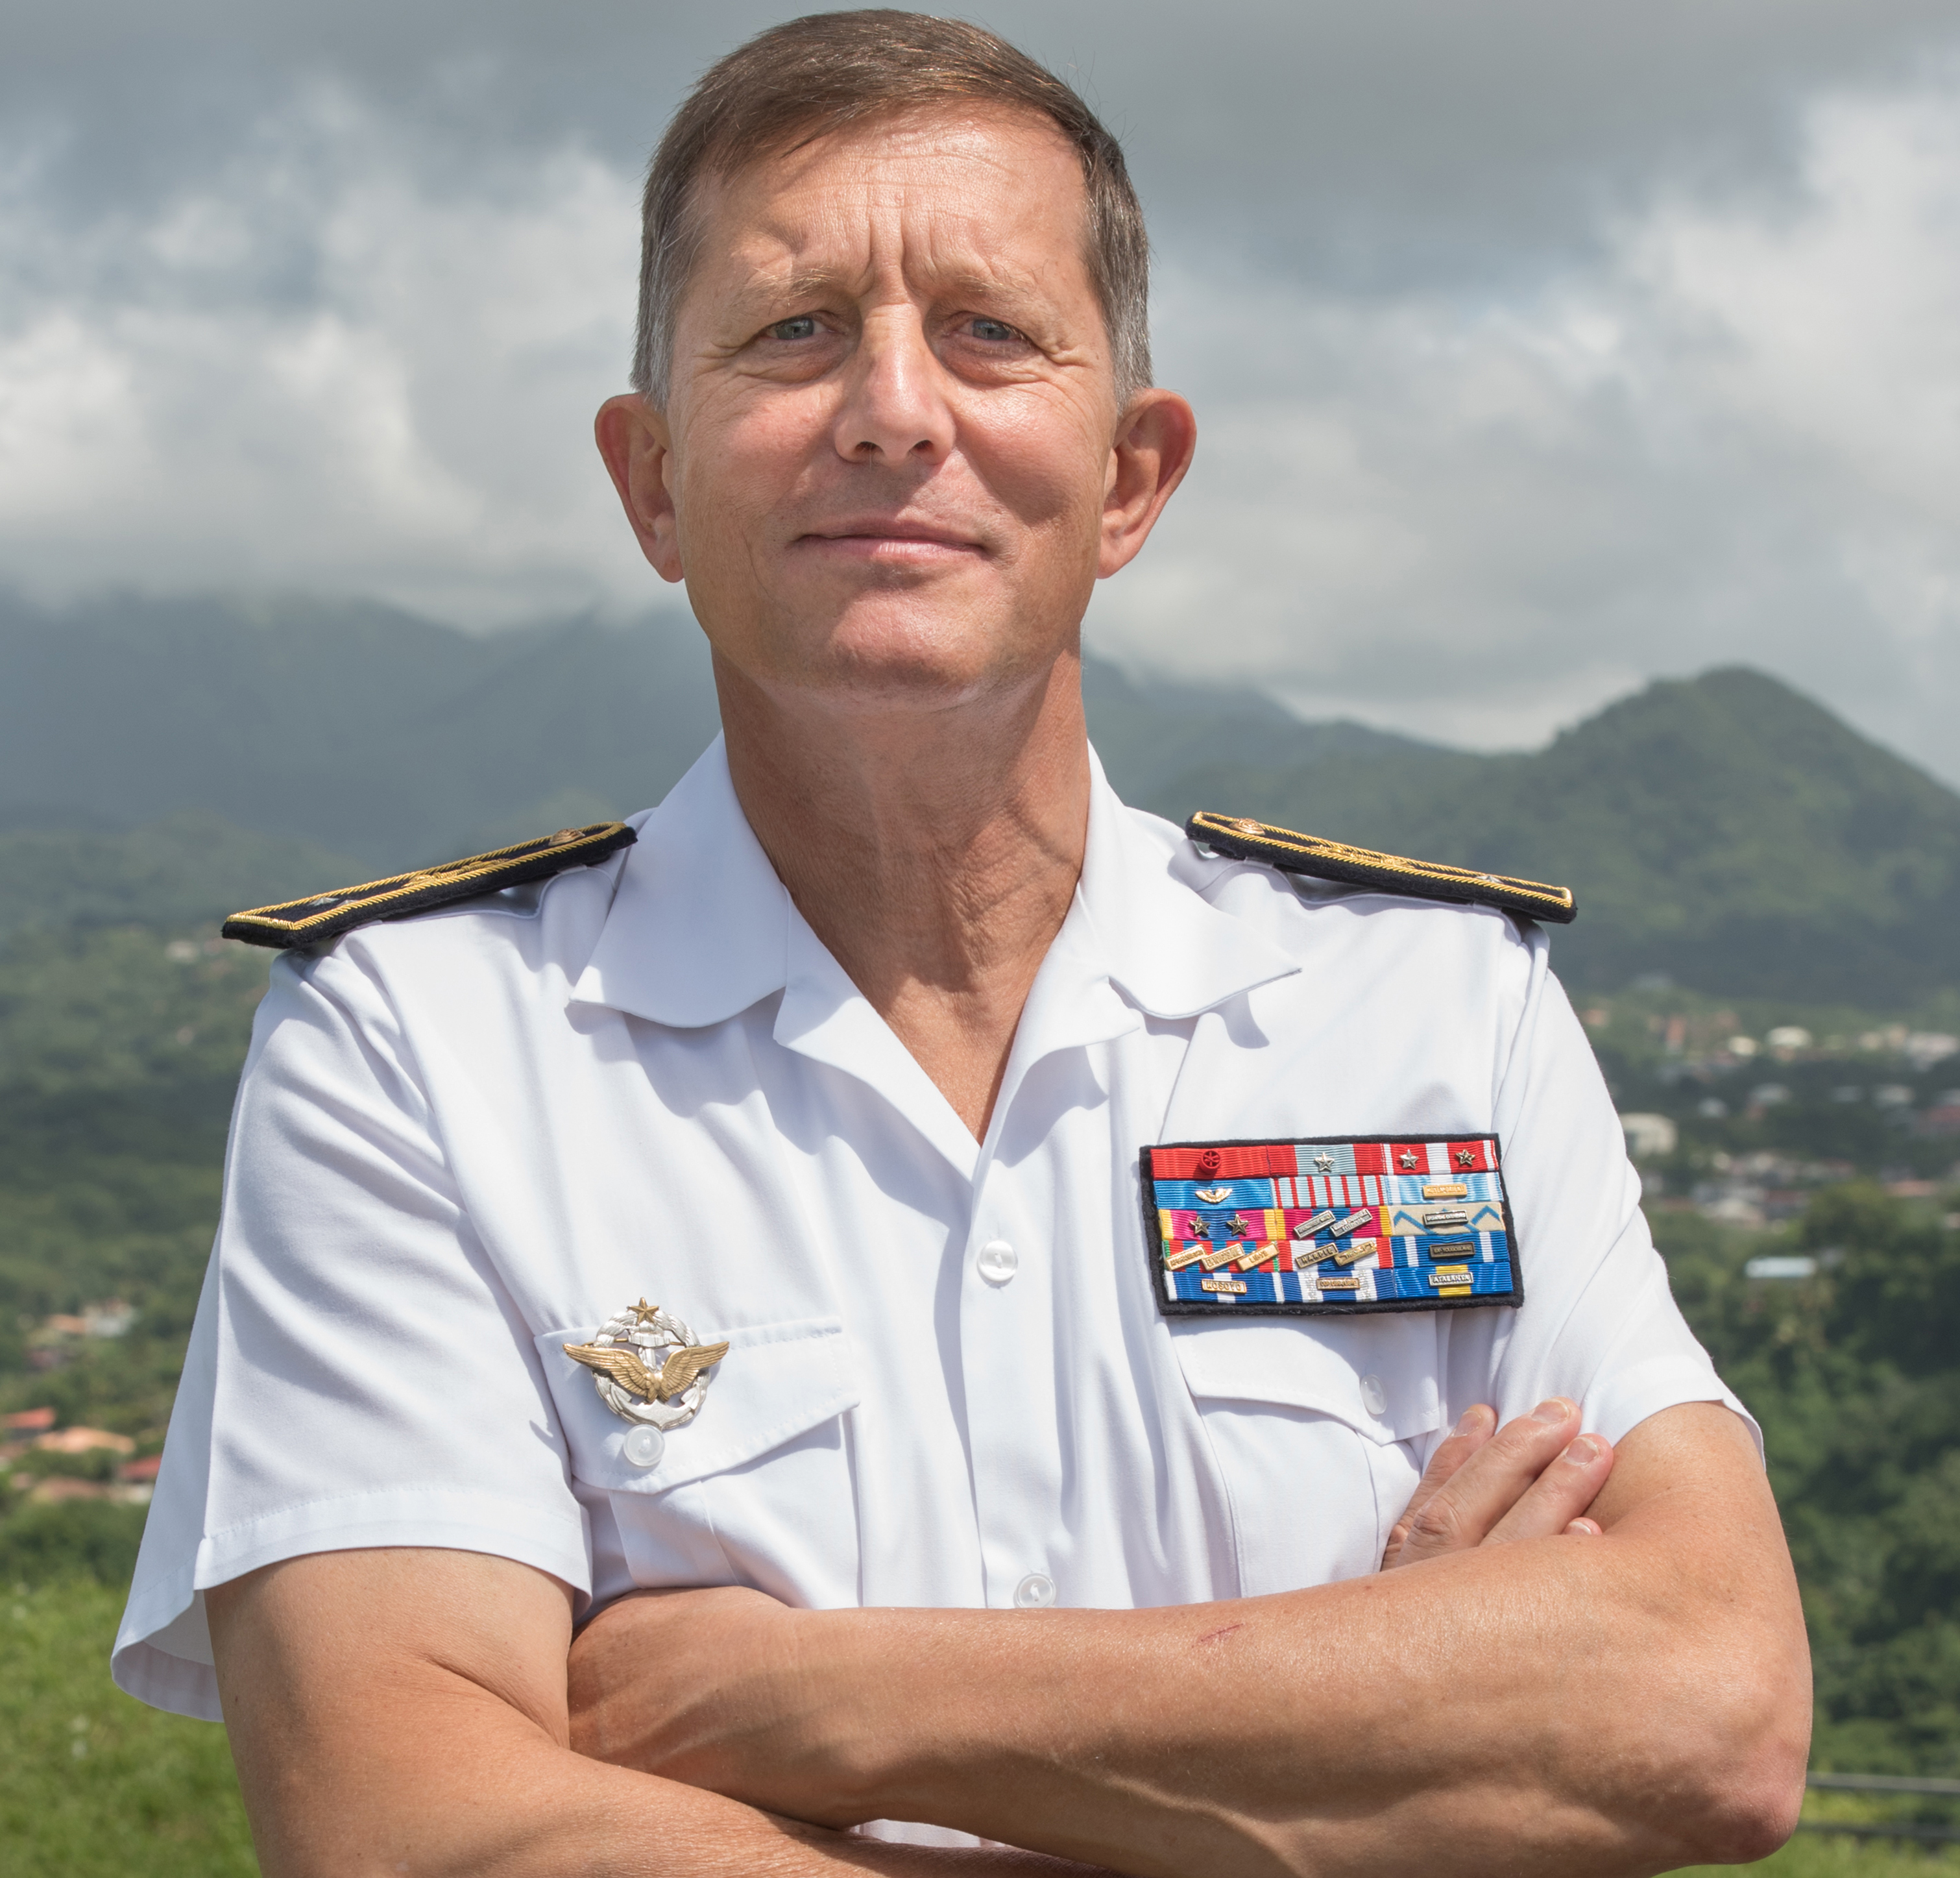     Eric Aymard prend la tête des Forces Armées aux Antilles

